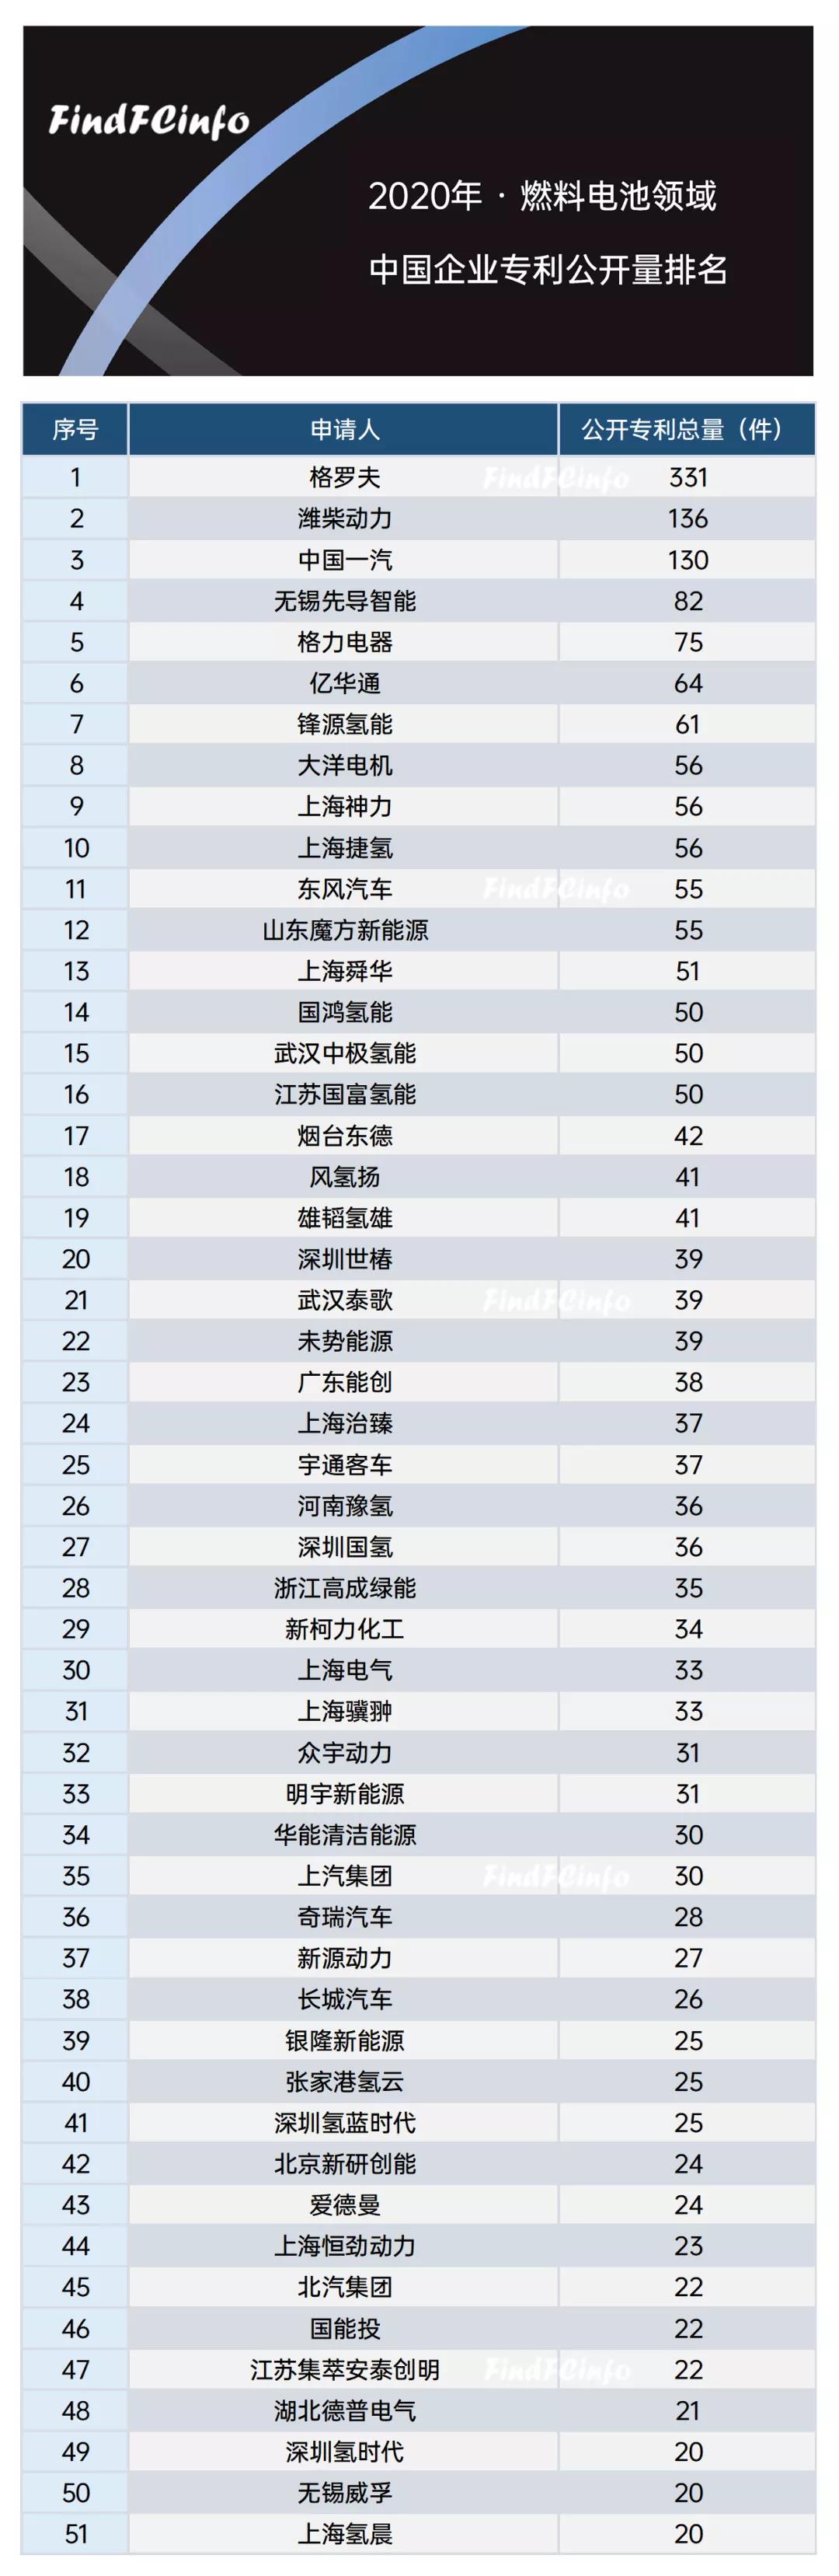 2020年燃料电池领域中国企业专利公开量排名：格罗夫、潍柴动力、中国一汽位列三甲